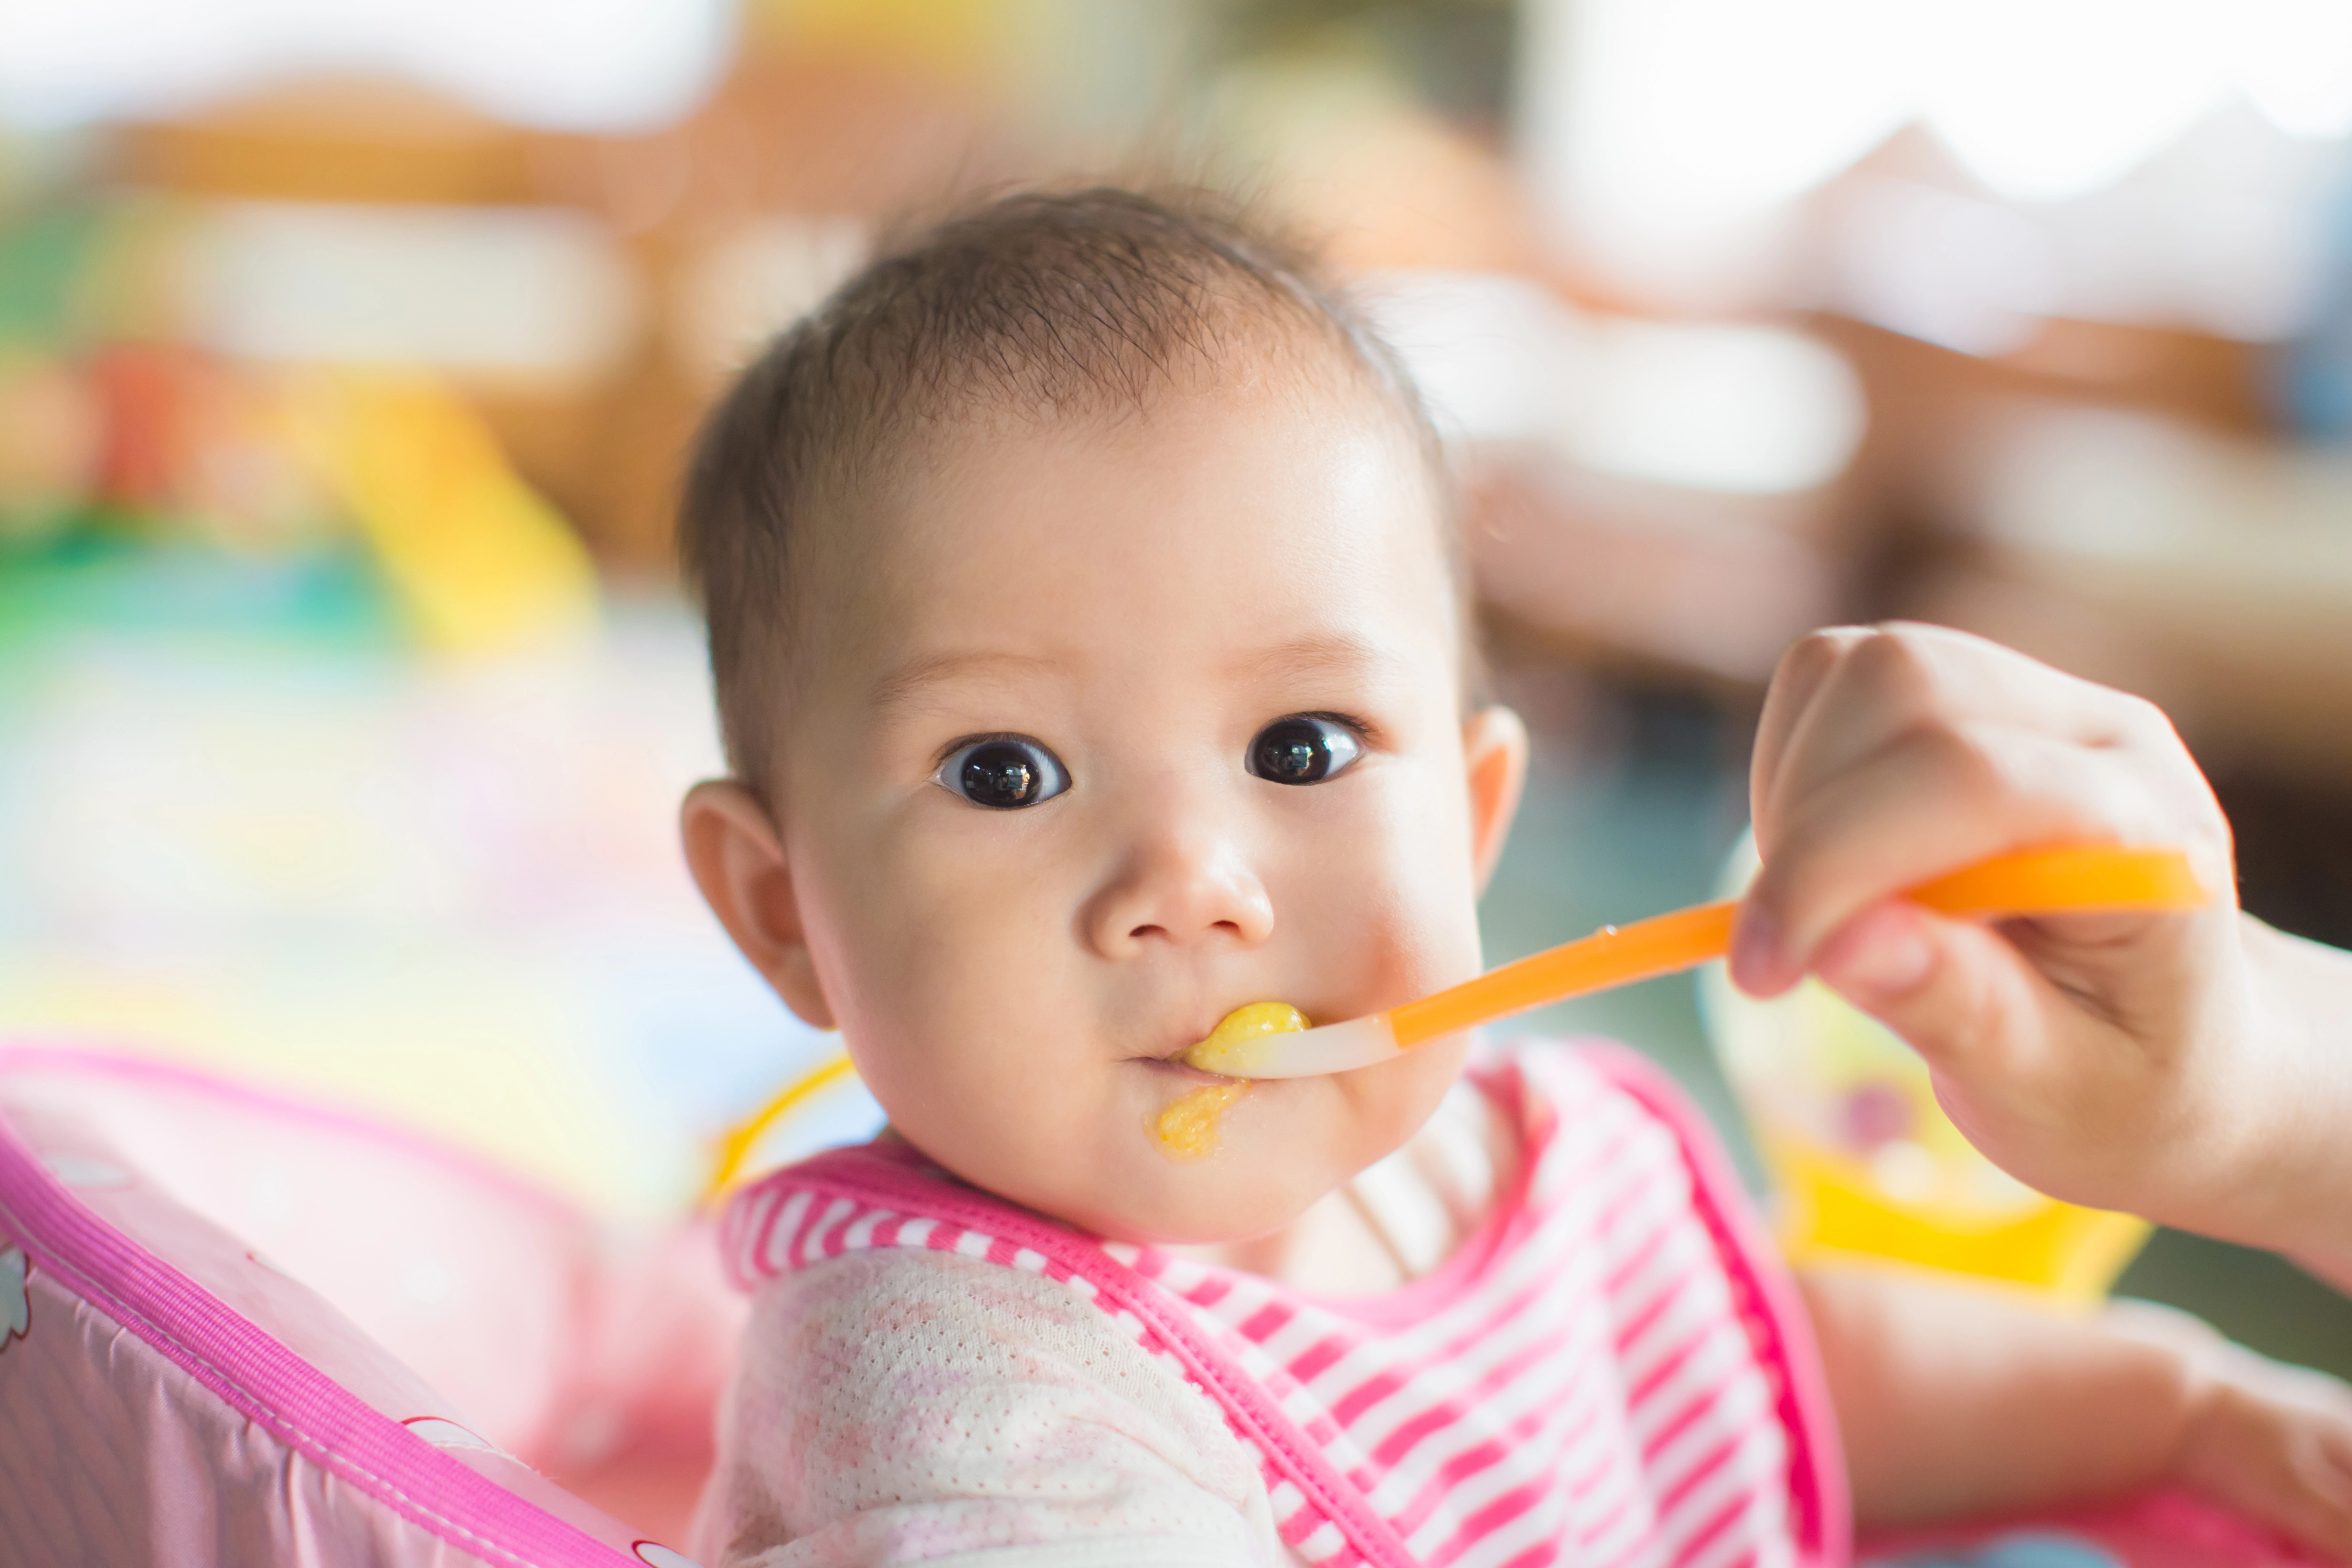 嬰兒滿6個月大便可以開始加固，即除母乳或奶粉外加入固體食物，以維持成長所需。